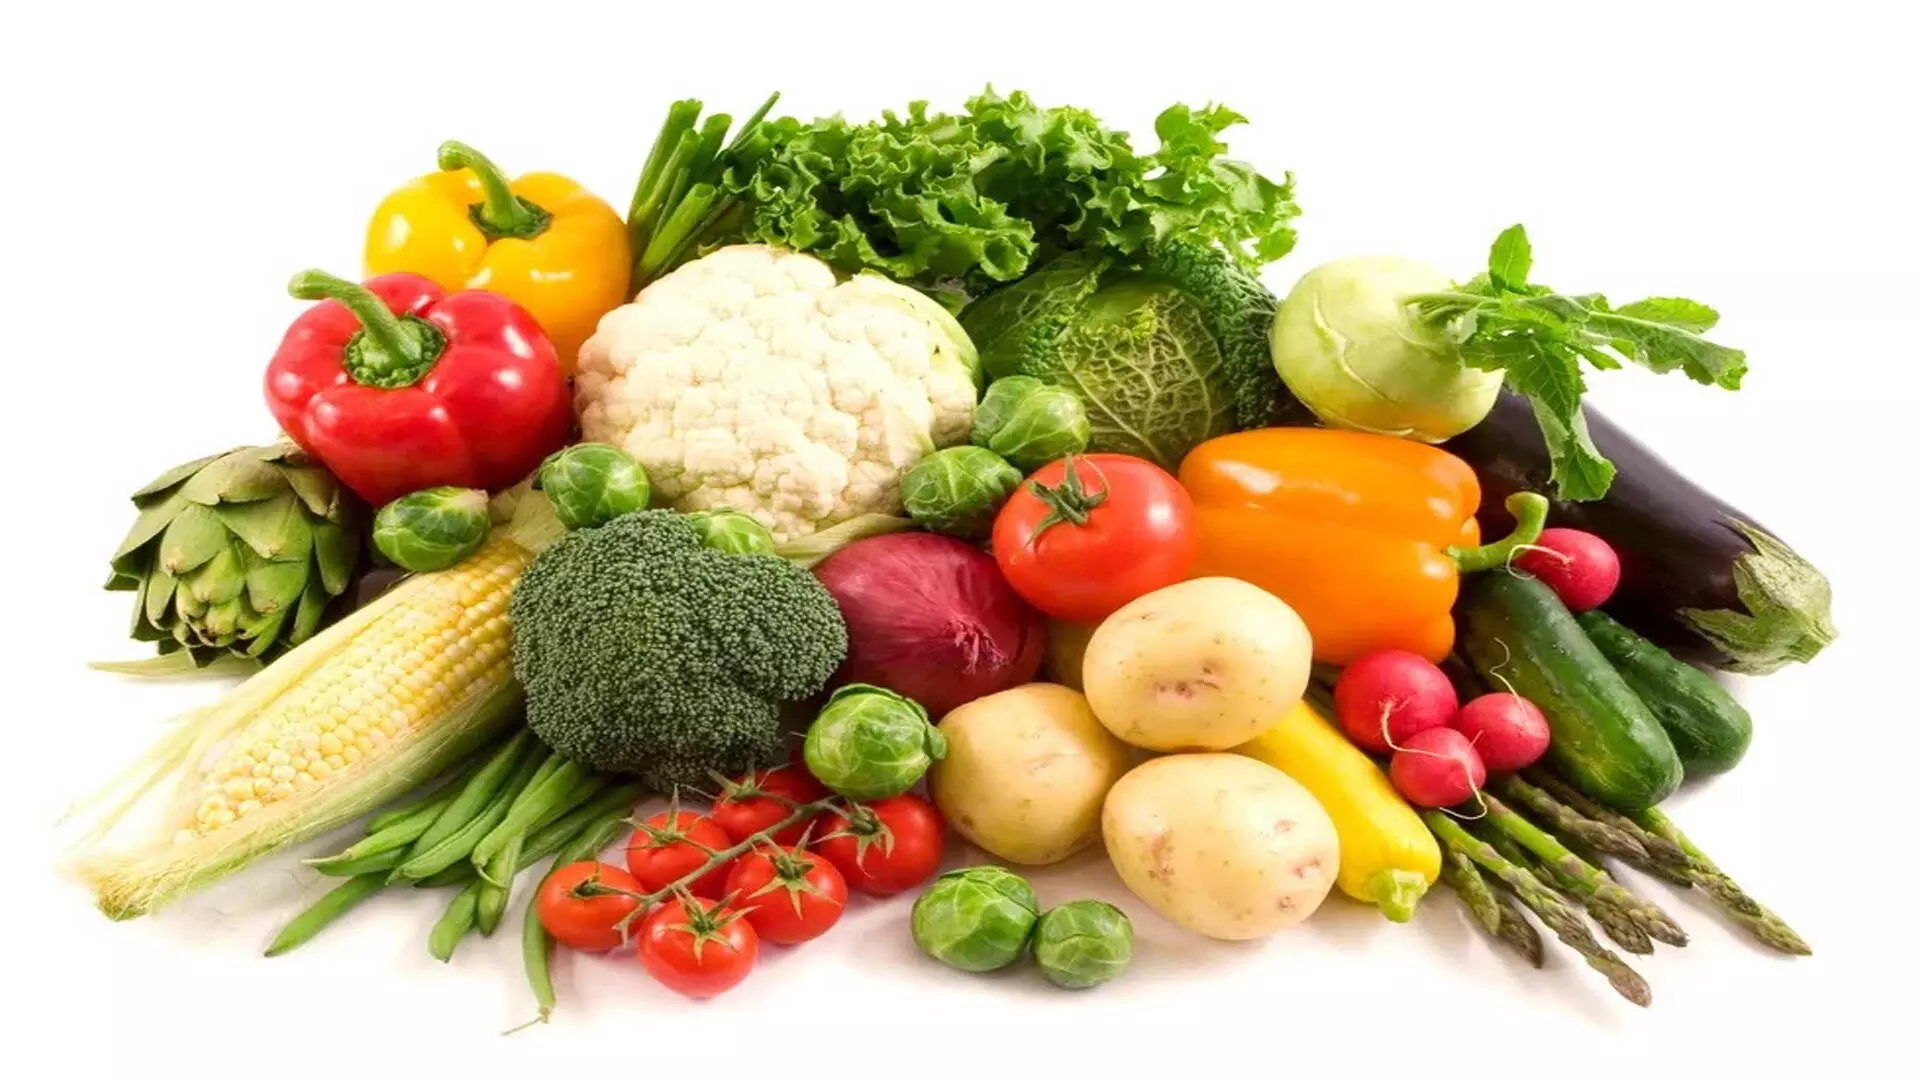 गुणों से भरा,पोषक तत्वों से भरपूर ये सब्जियां